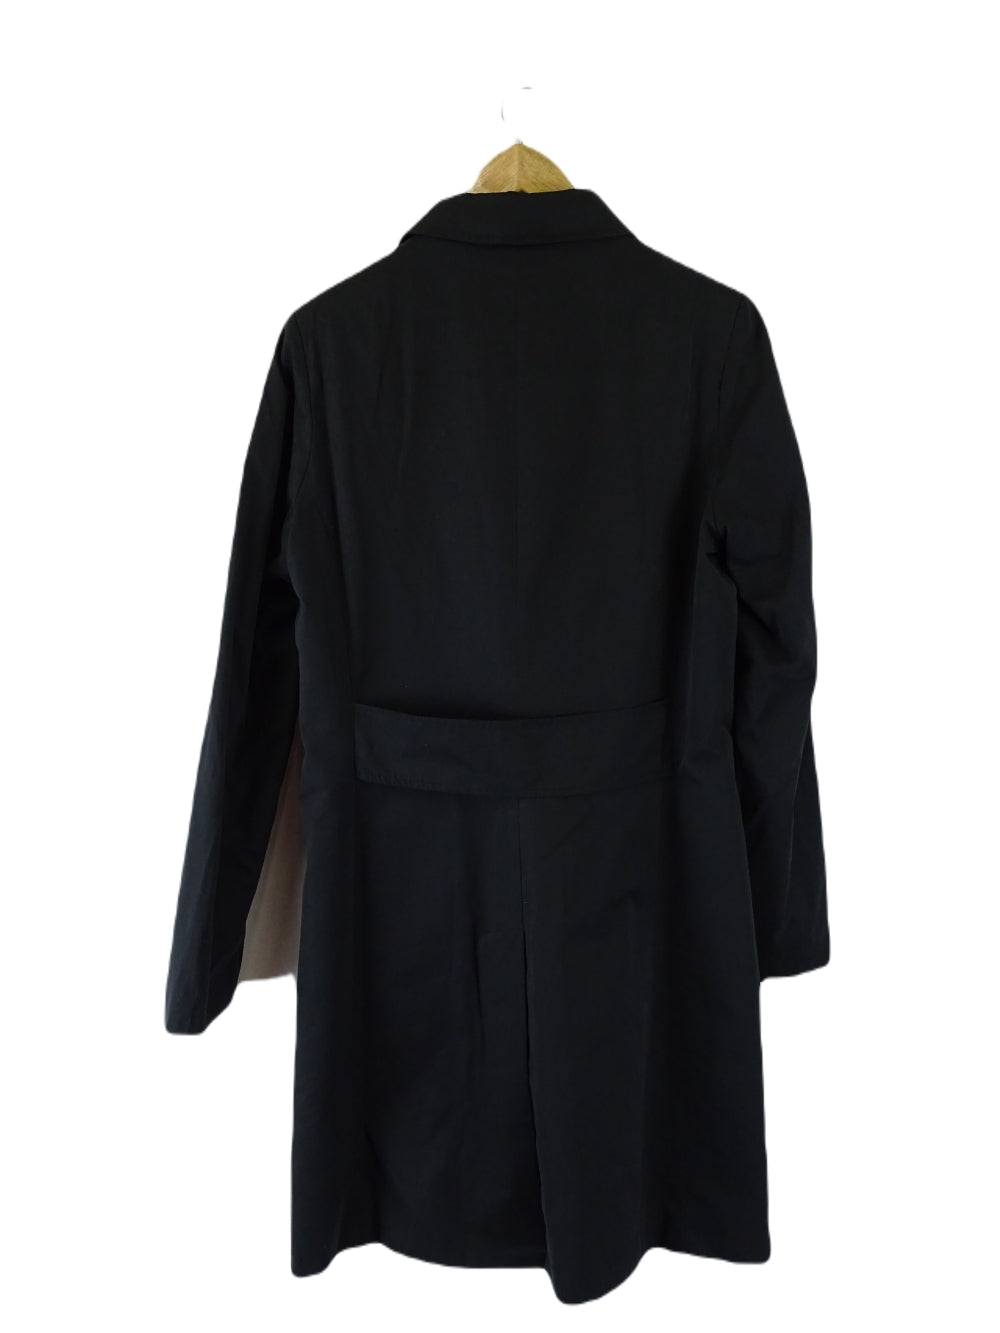 Jacquie E Black Coat S